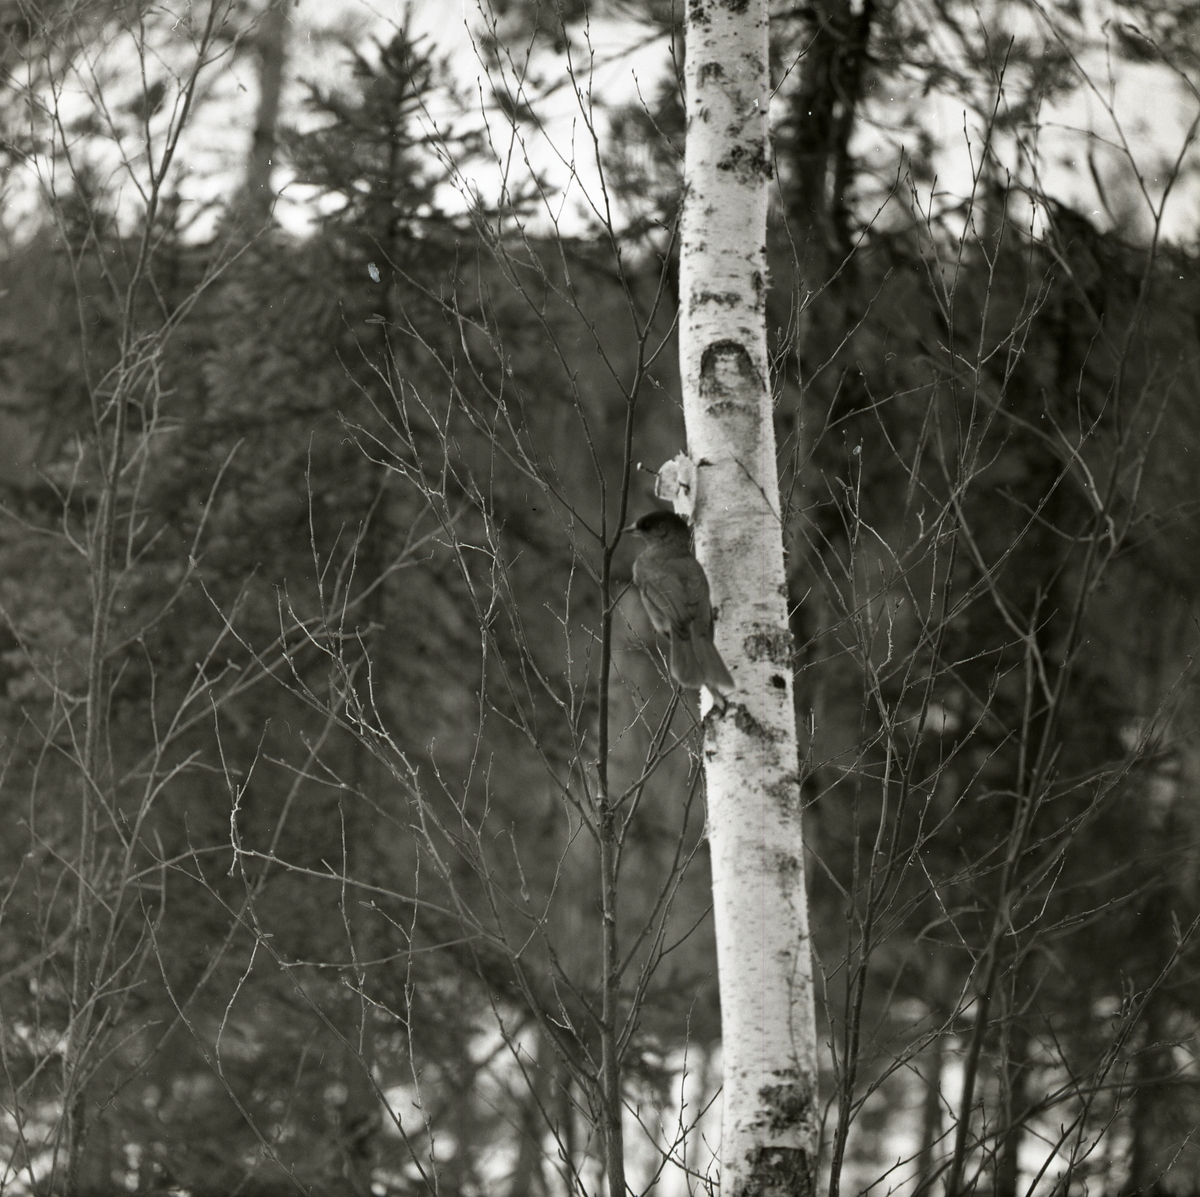 En lavskrika sitter i träd och pickar på en uppspikad svålbit den 31 mars 1967 i Harads.